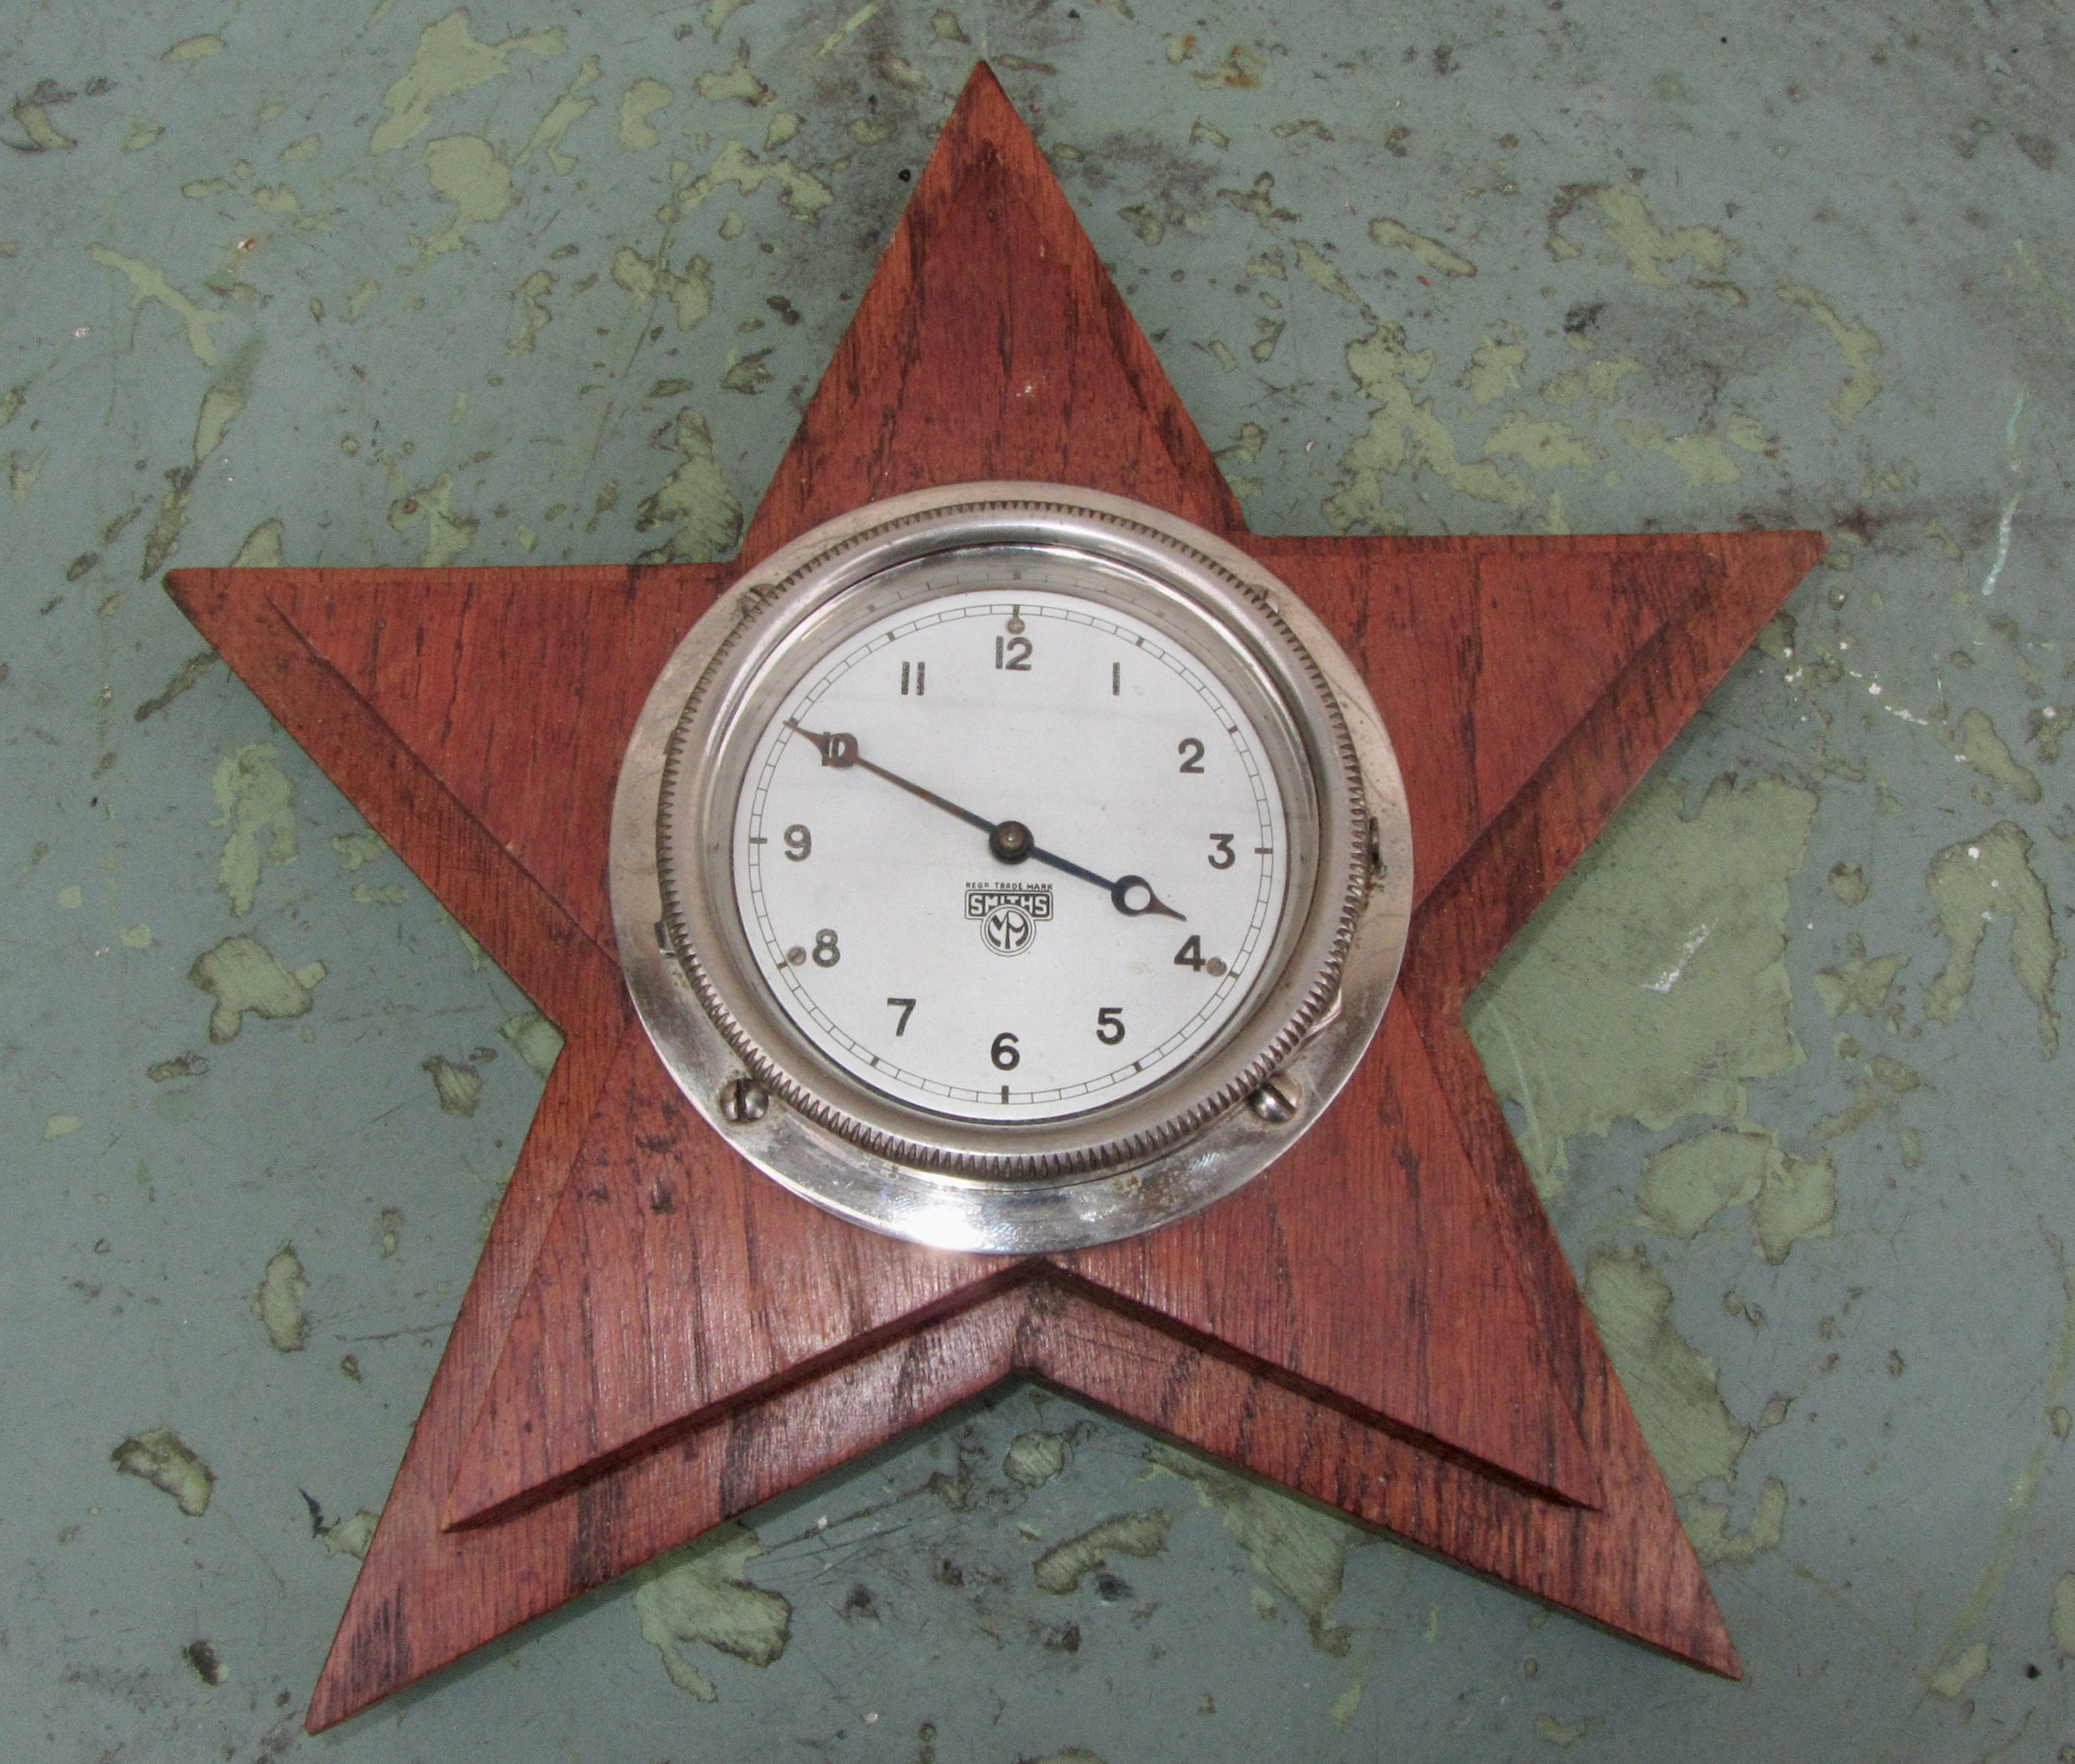 Autouhr, Vintage Uhr, elektromechanische 12 Volt, Uhr für Auto